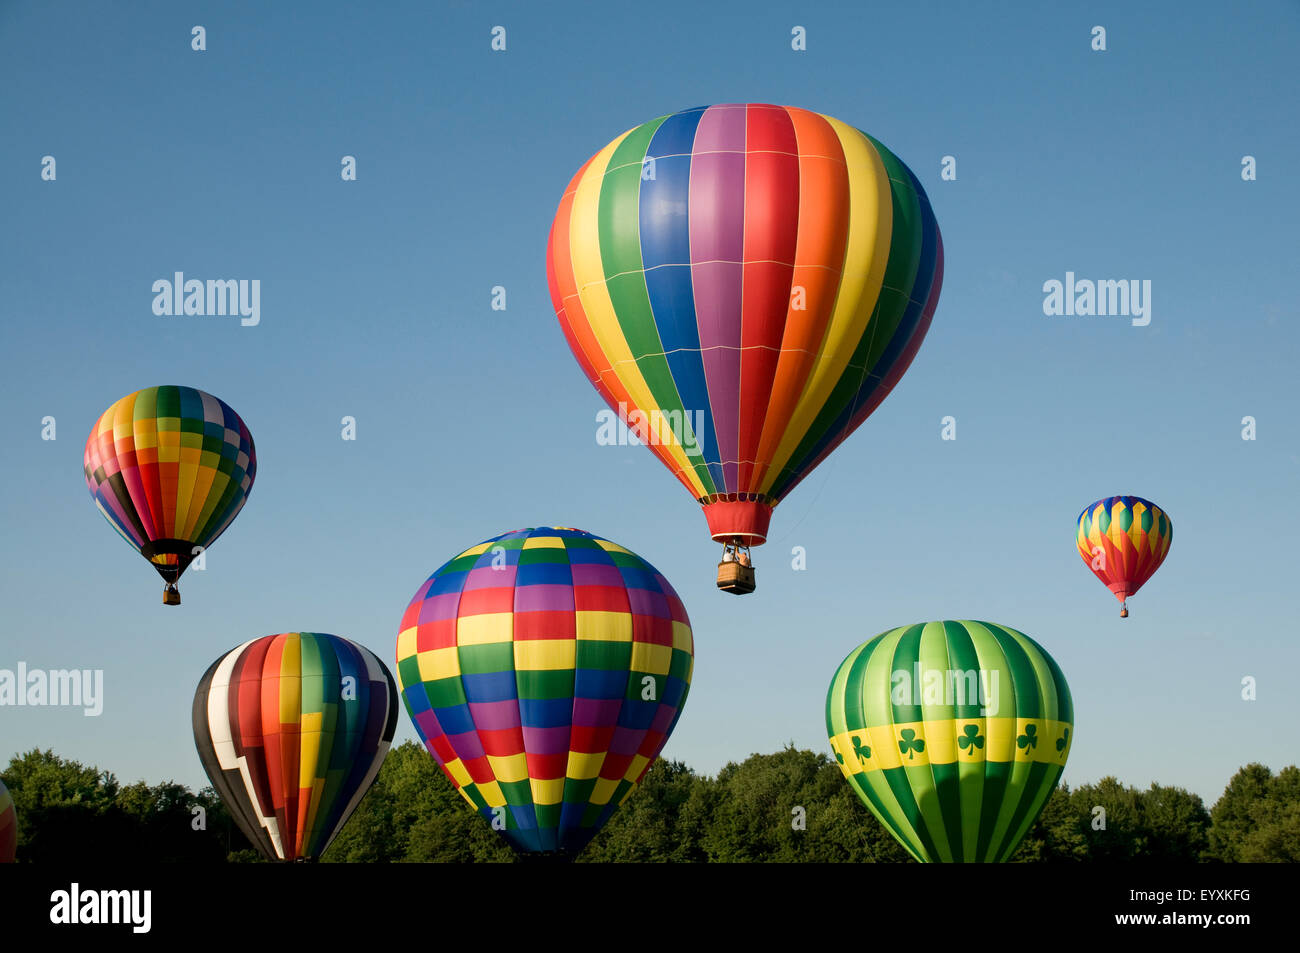 Divers Les ballons à air chaud avec enveloppes colorées ordre croissant ou de lancer à un festival de la montgolfière Banque D'Images